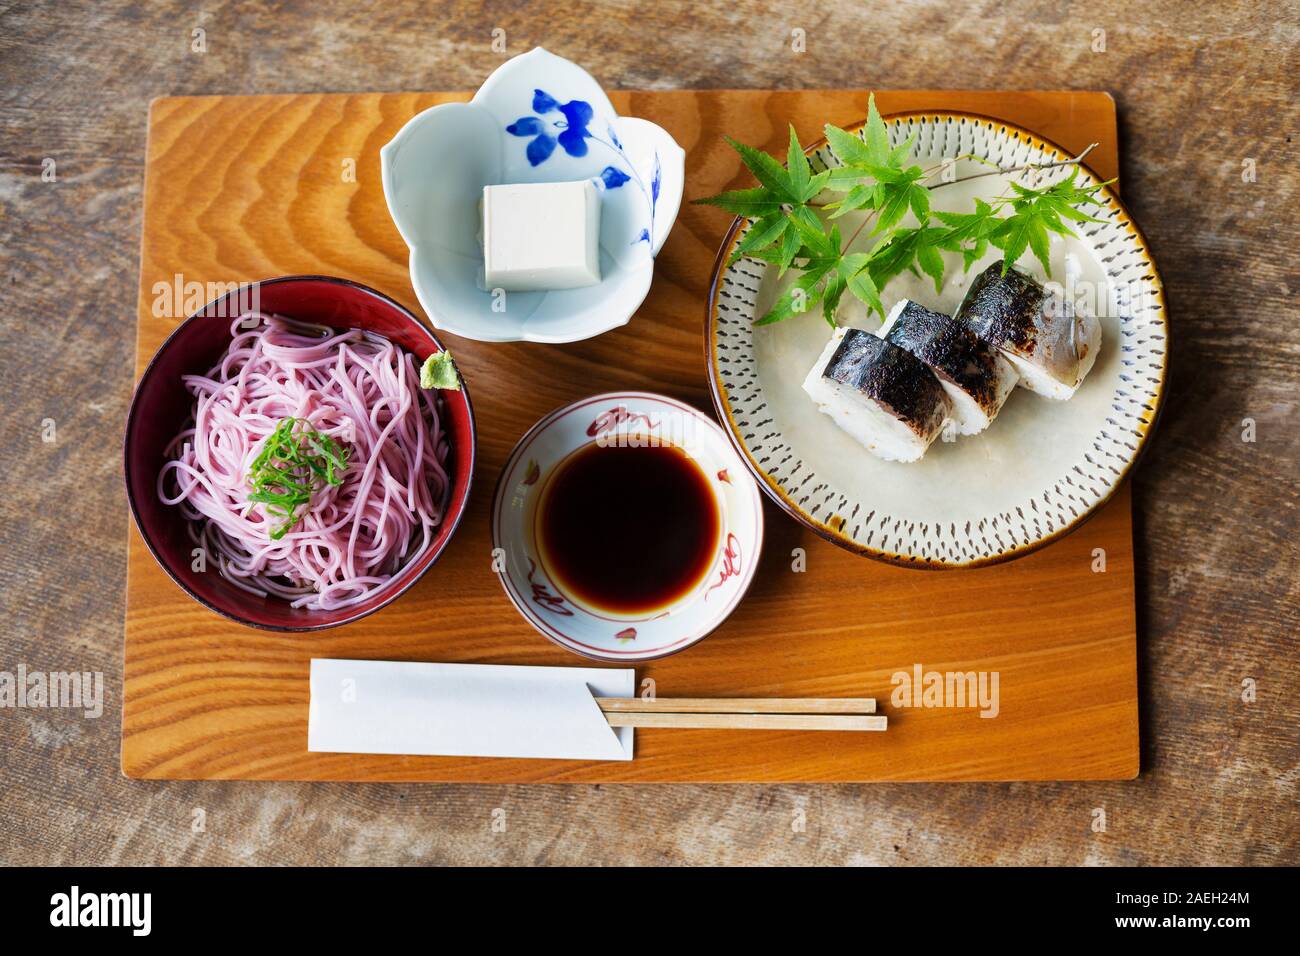 Hohen winkel Nahaufnahme von Sushi, Nudeln, Tofu und Soja Sauce auf eine Tabelle in ein japanisches Restaurant. Stockfoto